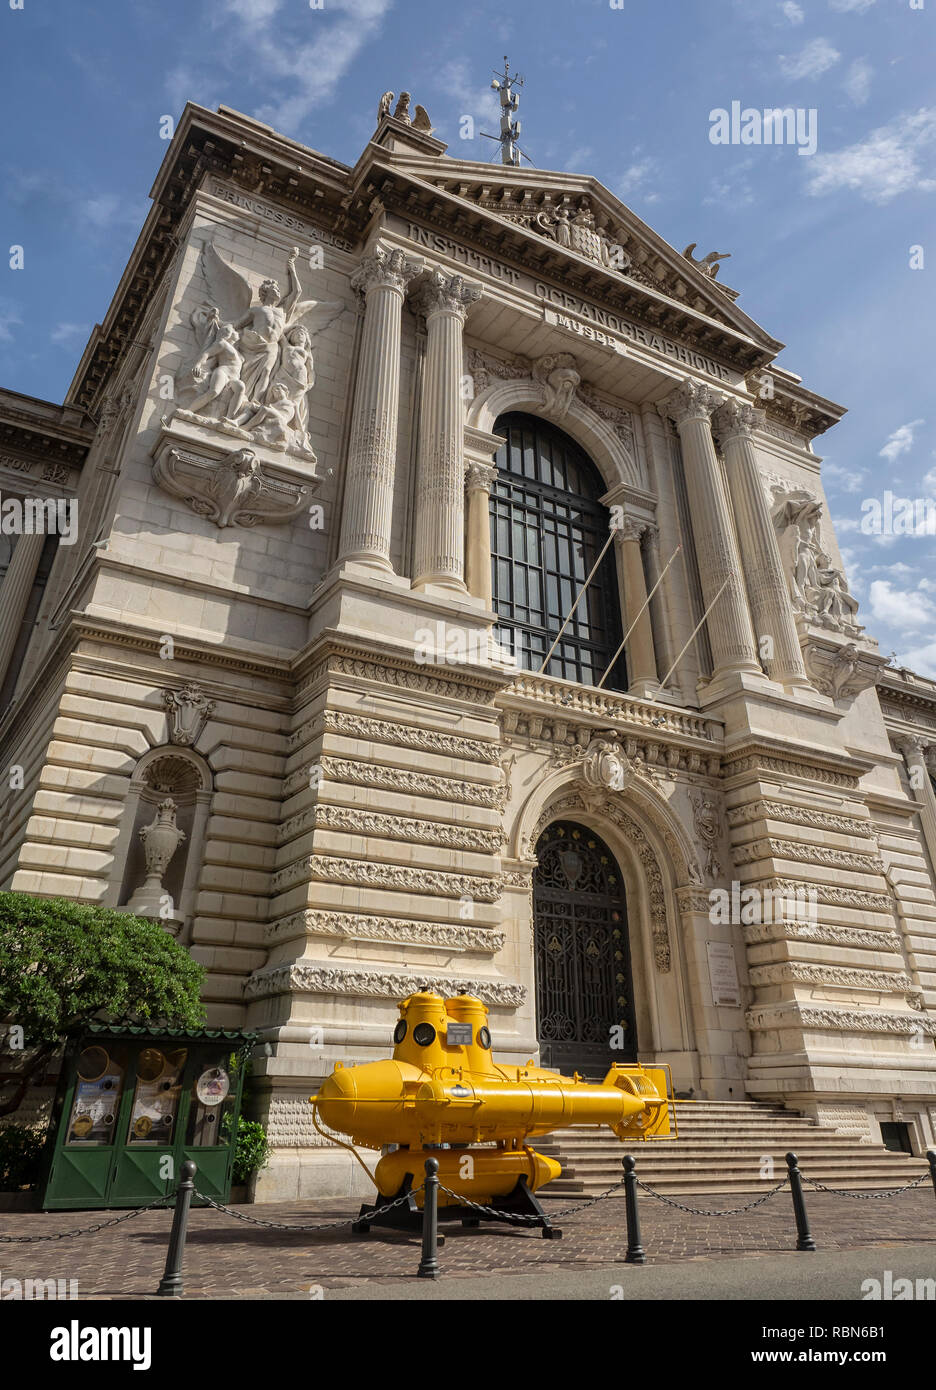 MONTE CARLO, MONACO : 26 MAI 2018 : mini-sous-marin jaune Anorep 1 devant le Musée océanographique (Musée océanographique). Banque D'Images